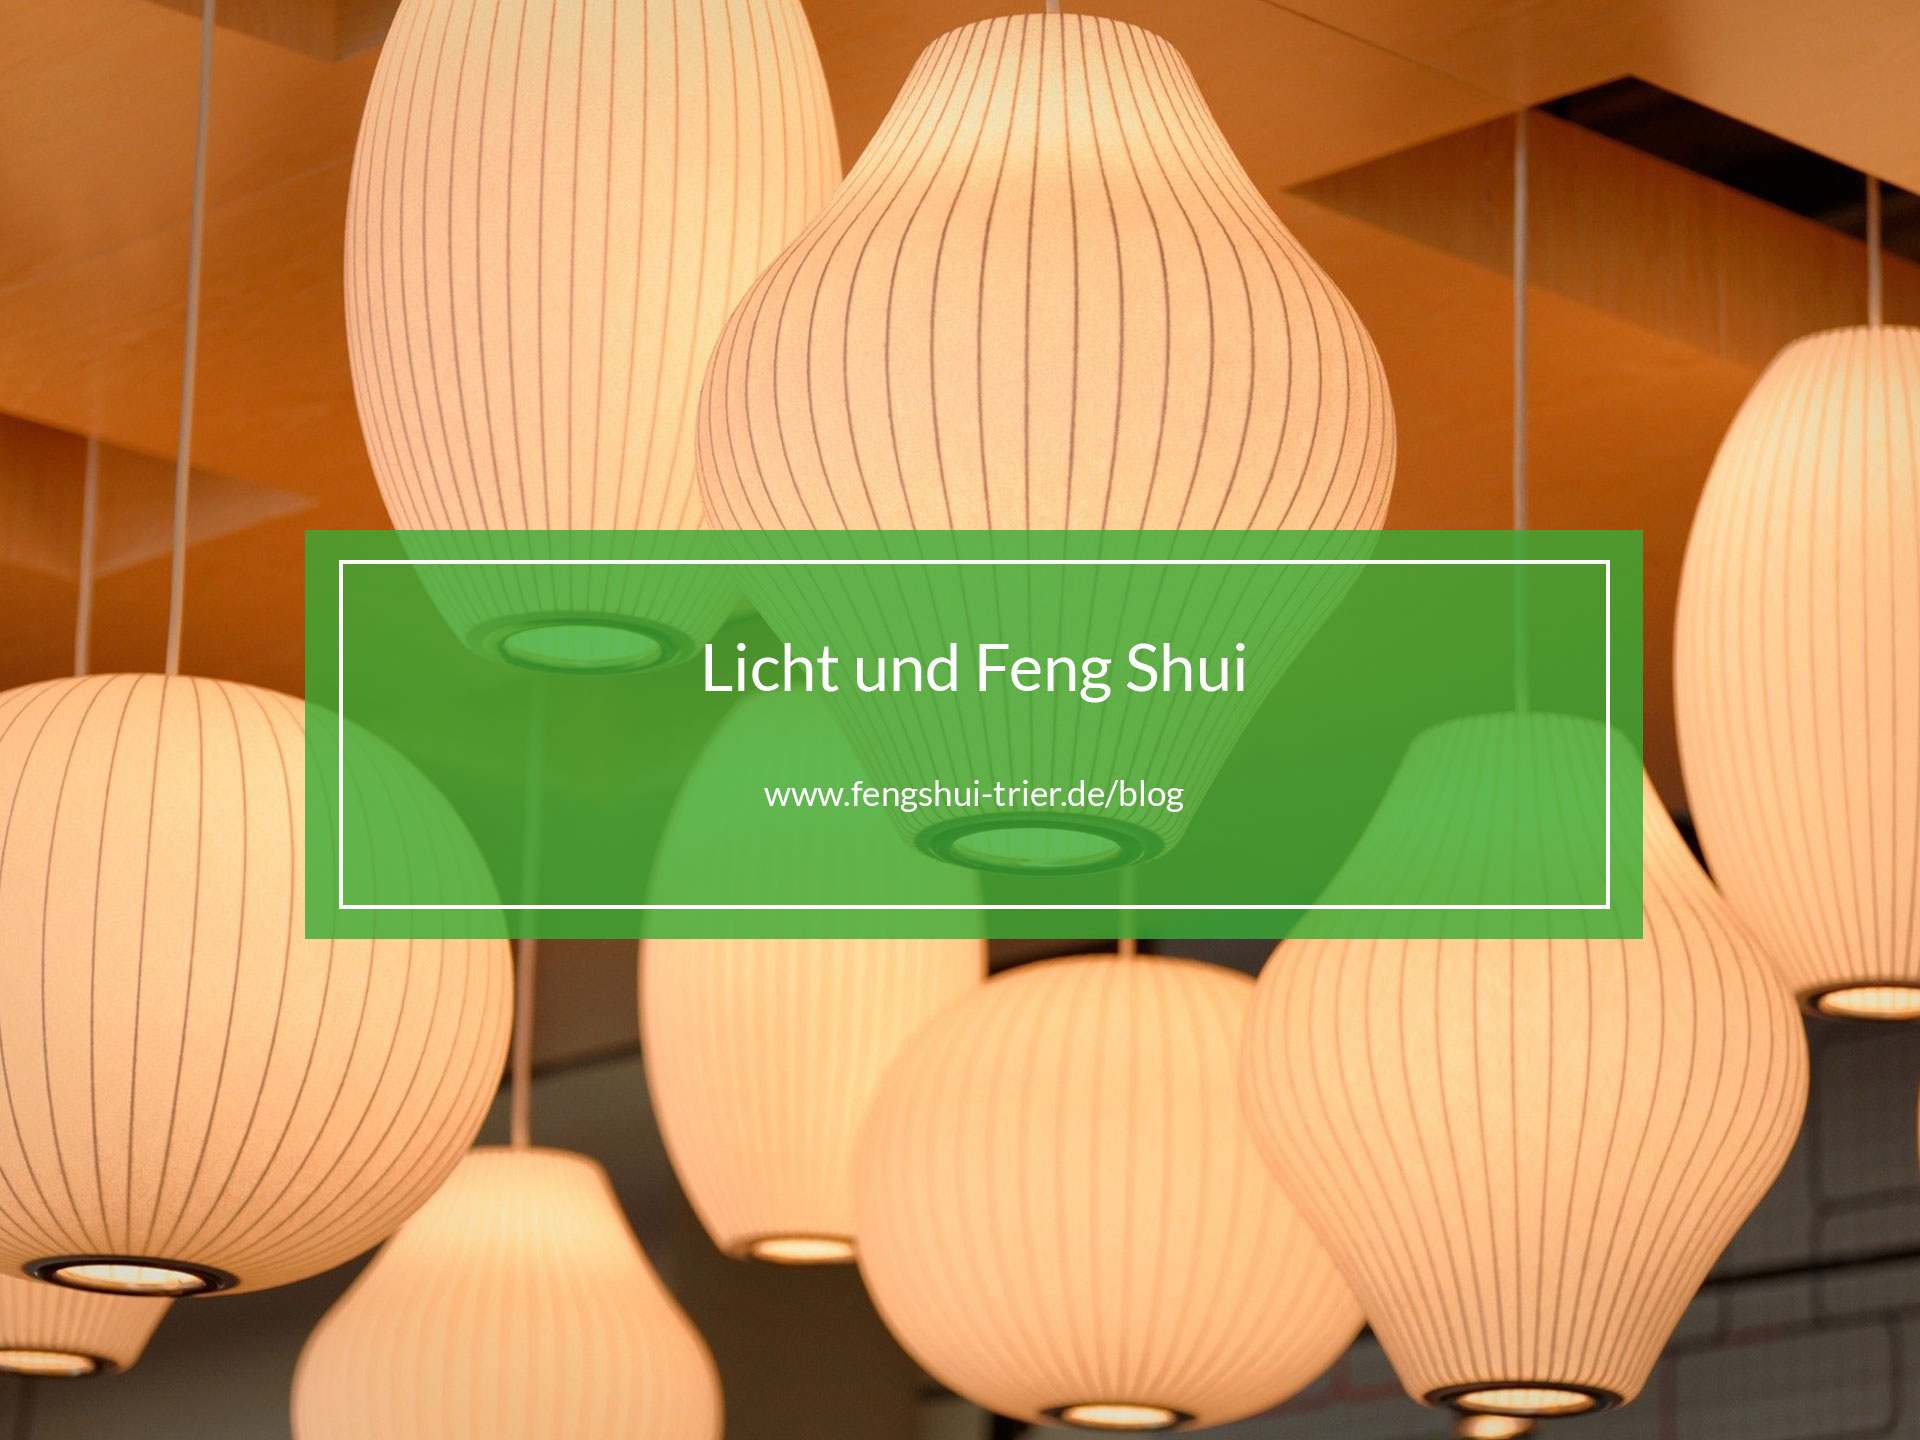 Licht und Feng Shui